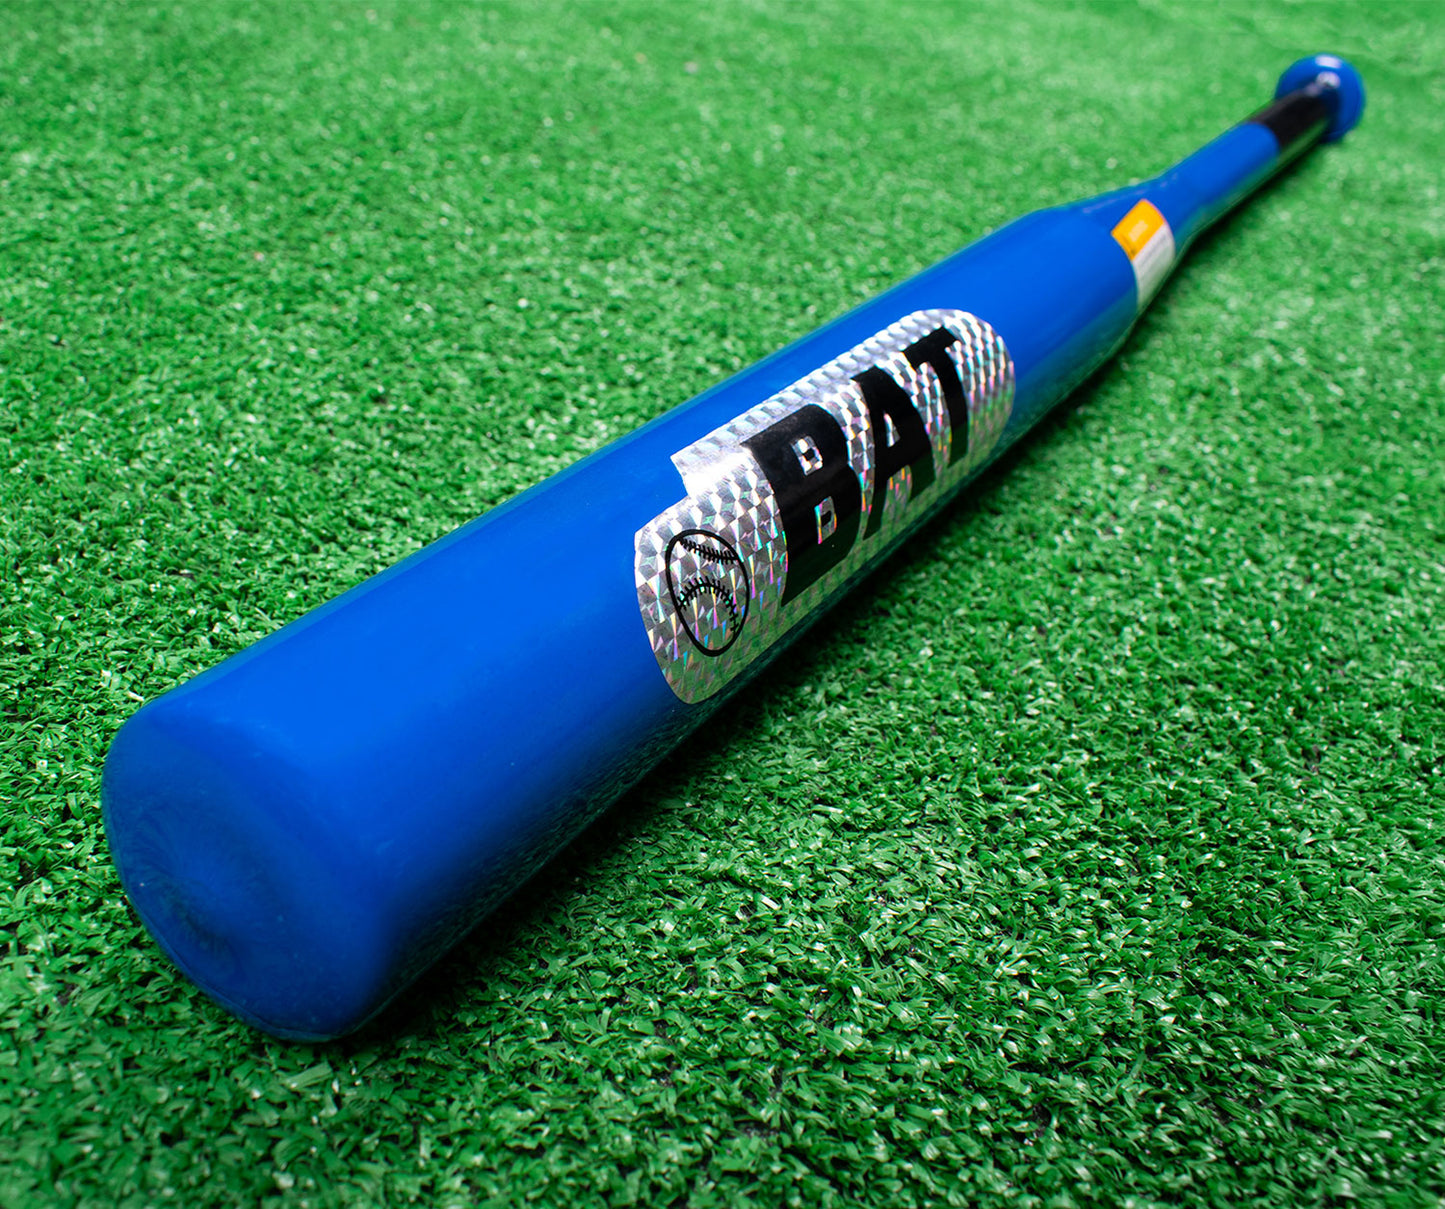 مضرب بيسبول عصا حديد - خامة معدن ثقيل - لوجو الوان عاكسة - لون ازرق - مقاس 32 انش